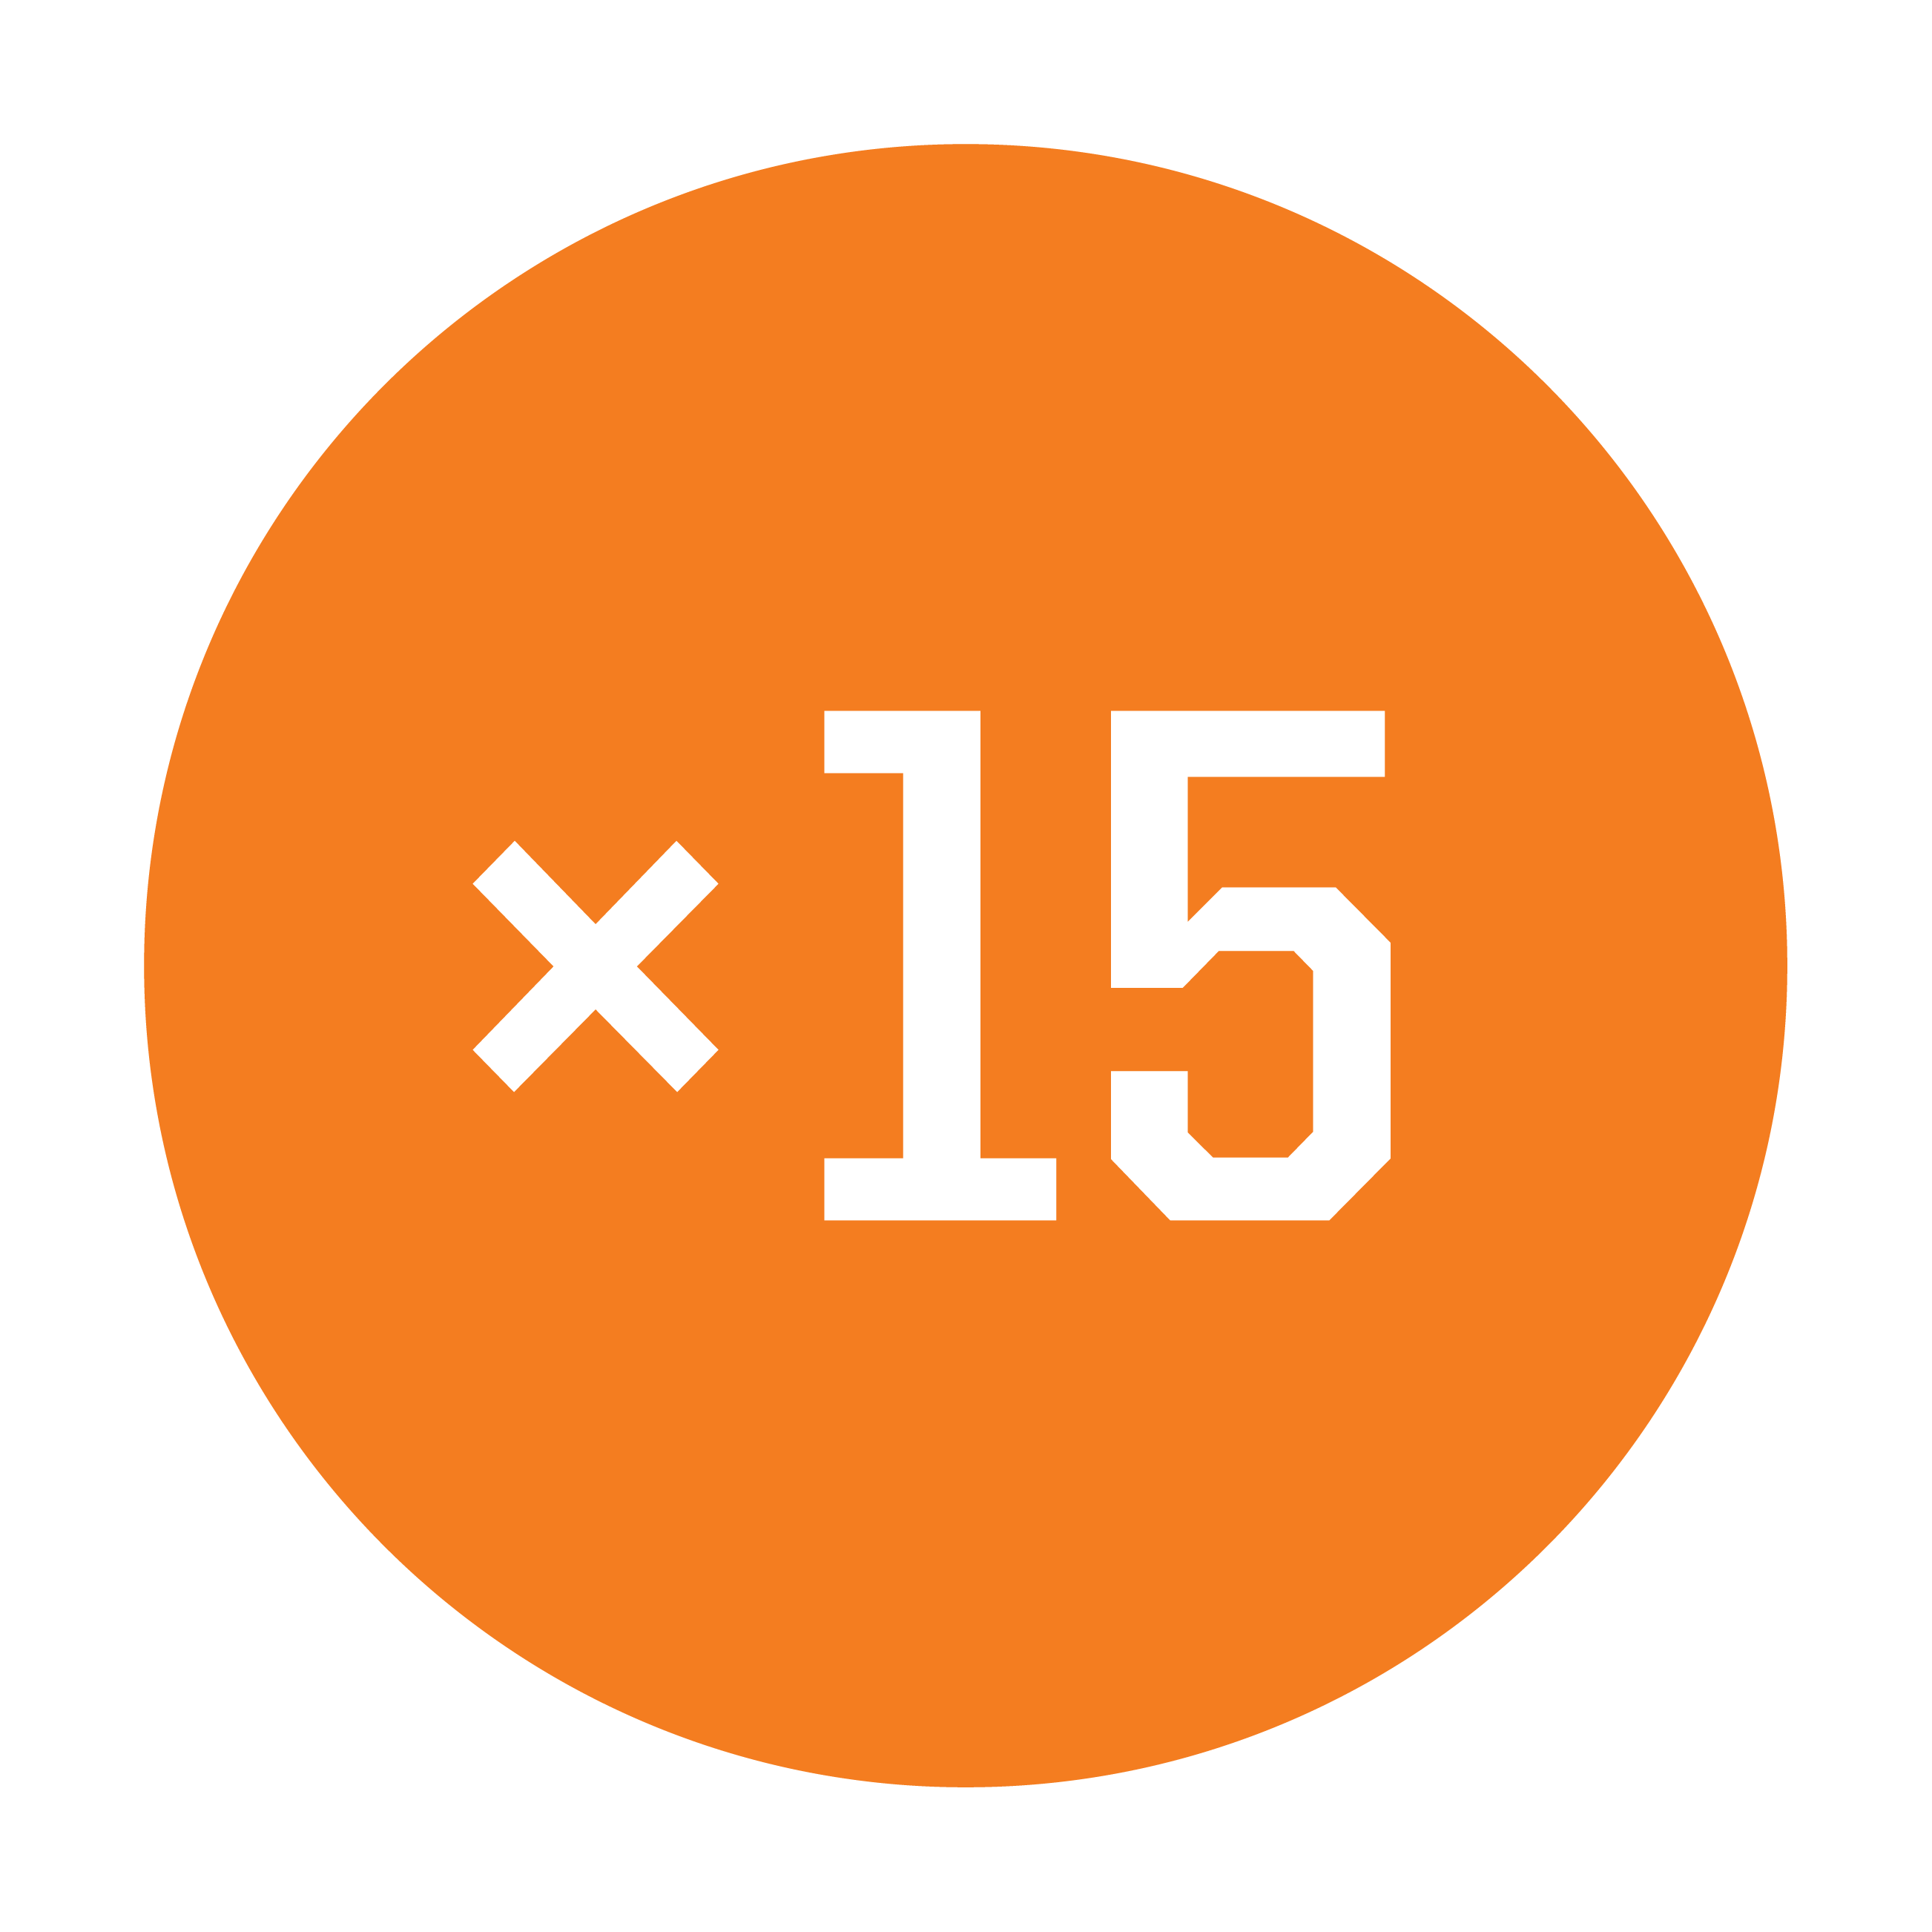 Esbit Icon in Orange zeigt ein Mal-Zeichen und eine 15.